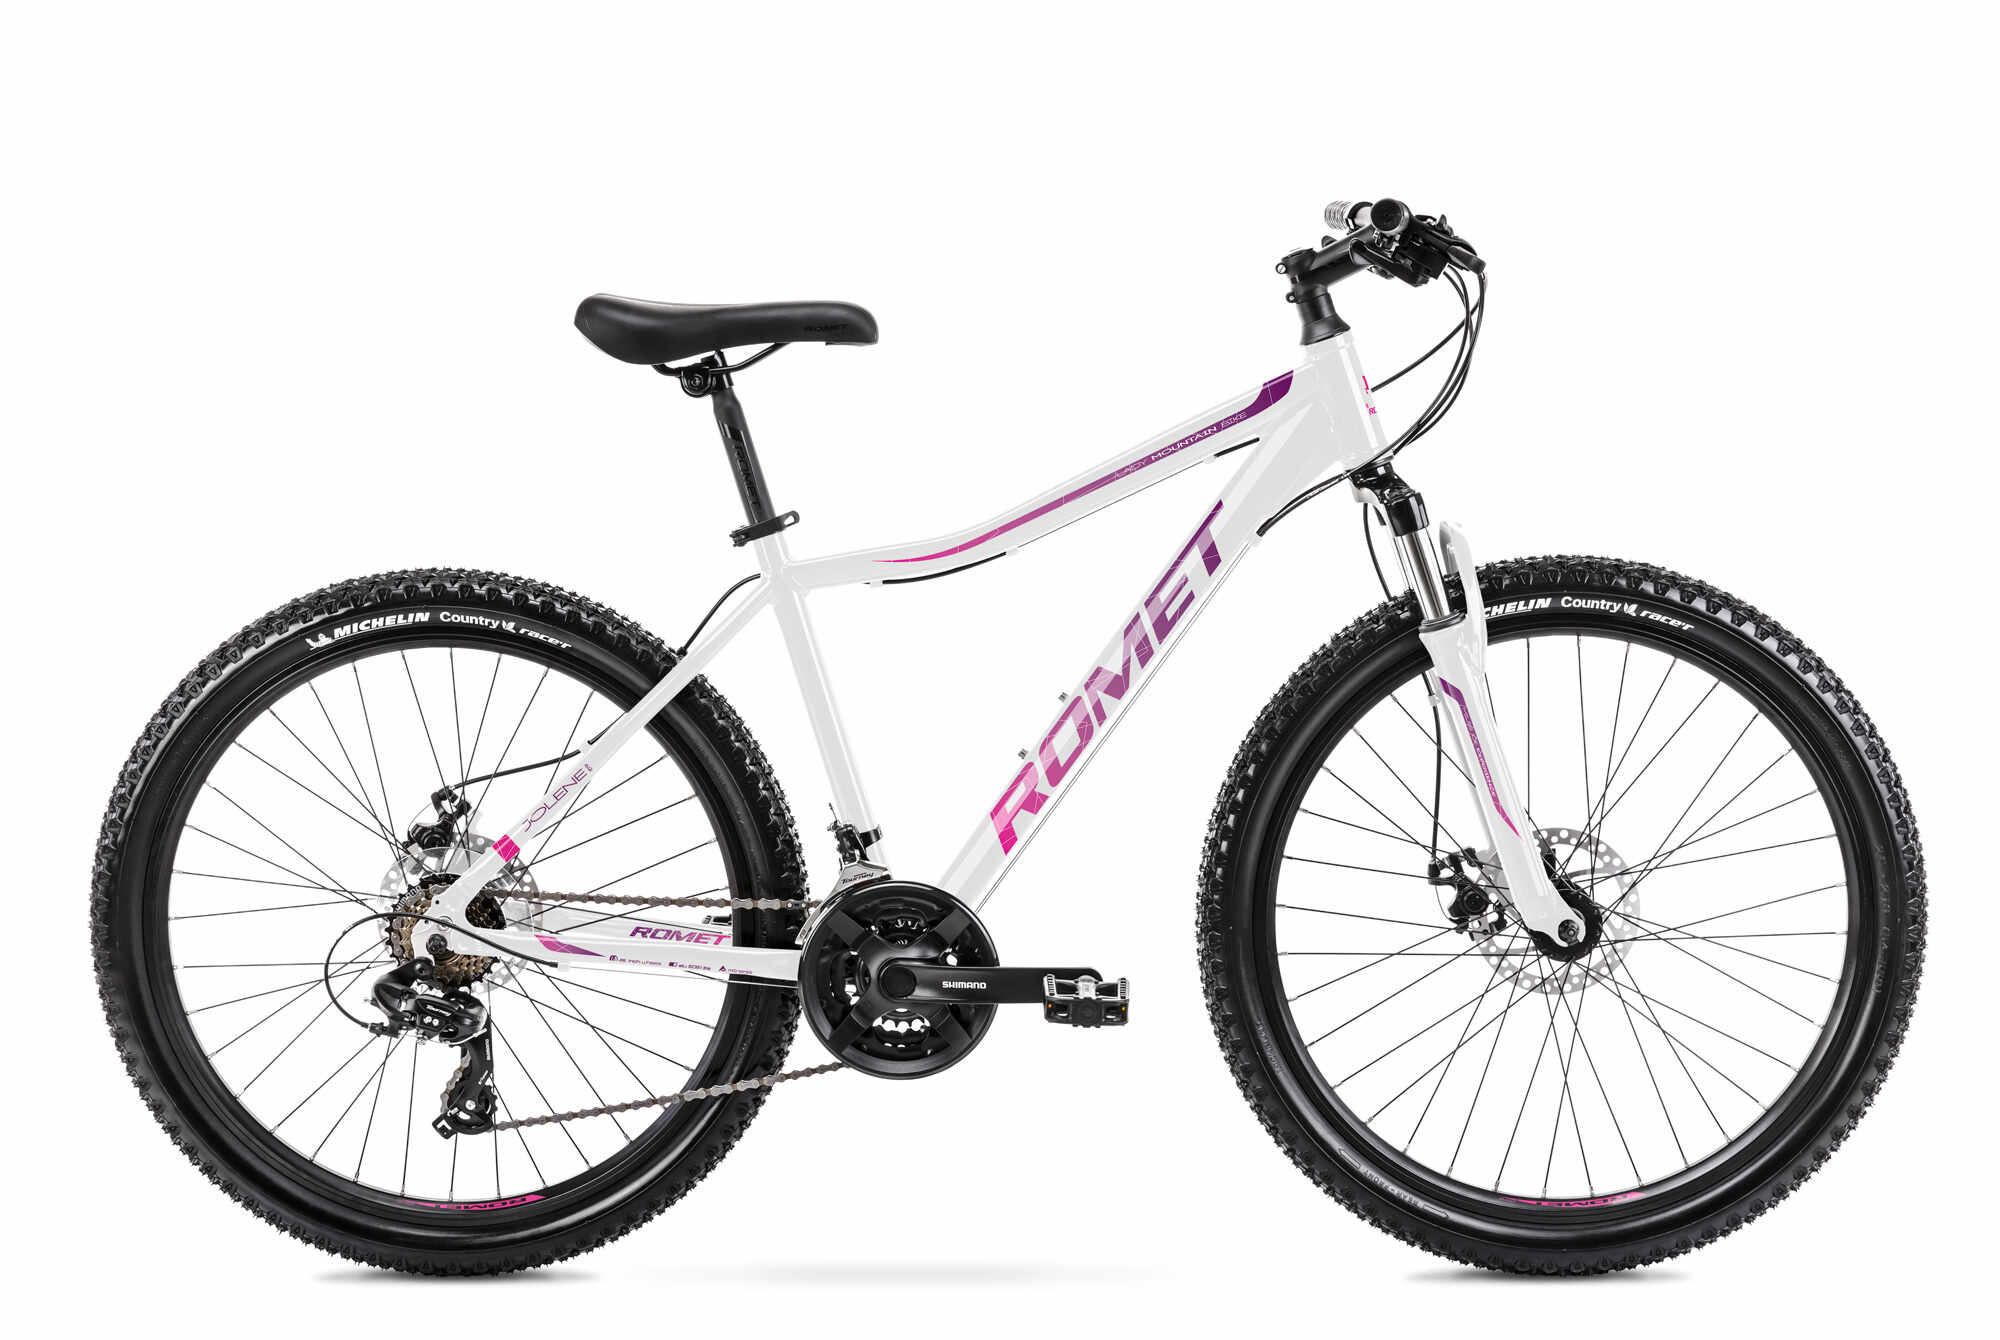 Bicicleta de munte pentru femei Romet Jolene 6.2 marimea S/15 Alb/Roz/Violet 2022